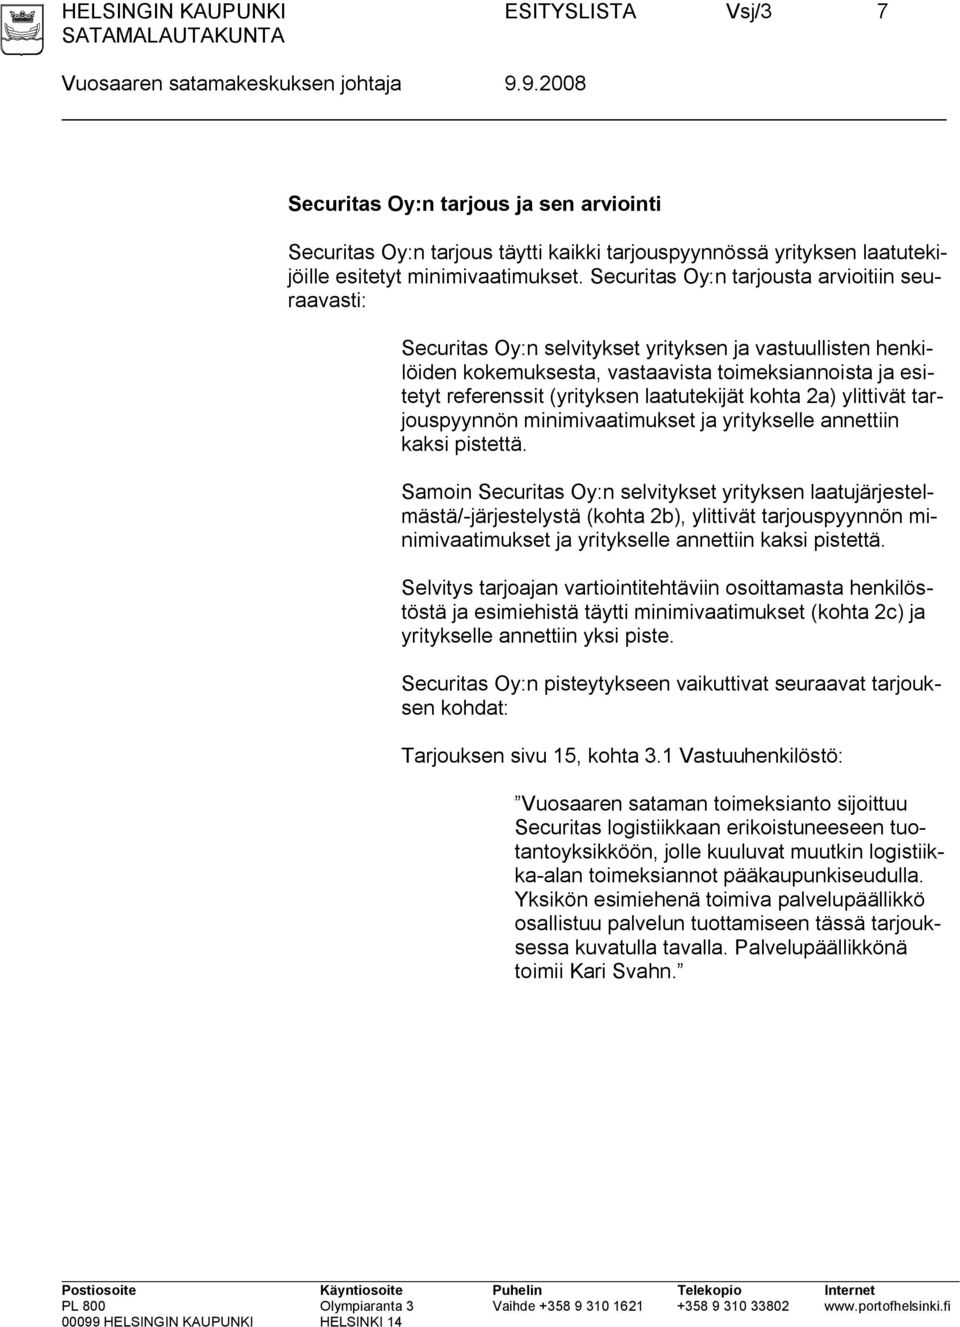 Securitas Oy:n tarjousta arvioitiin seuraavasti: Securitas Oy:n selvitykset yrityksen ja vastuullisten henkilöiden kokemuksesta, vastaavista toimeksiannoista ja esitetyt referenssit (yrityksen